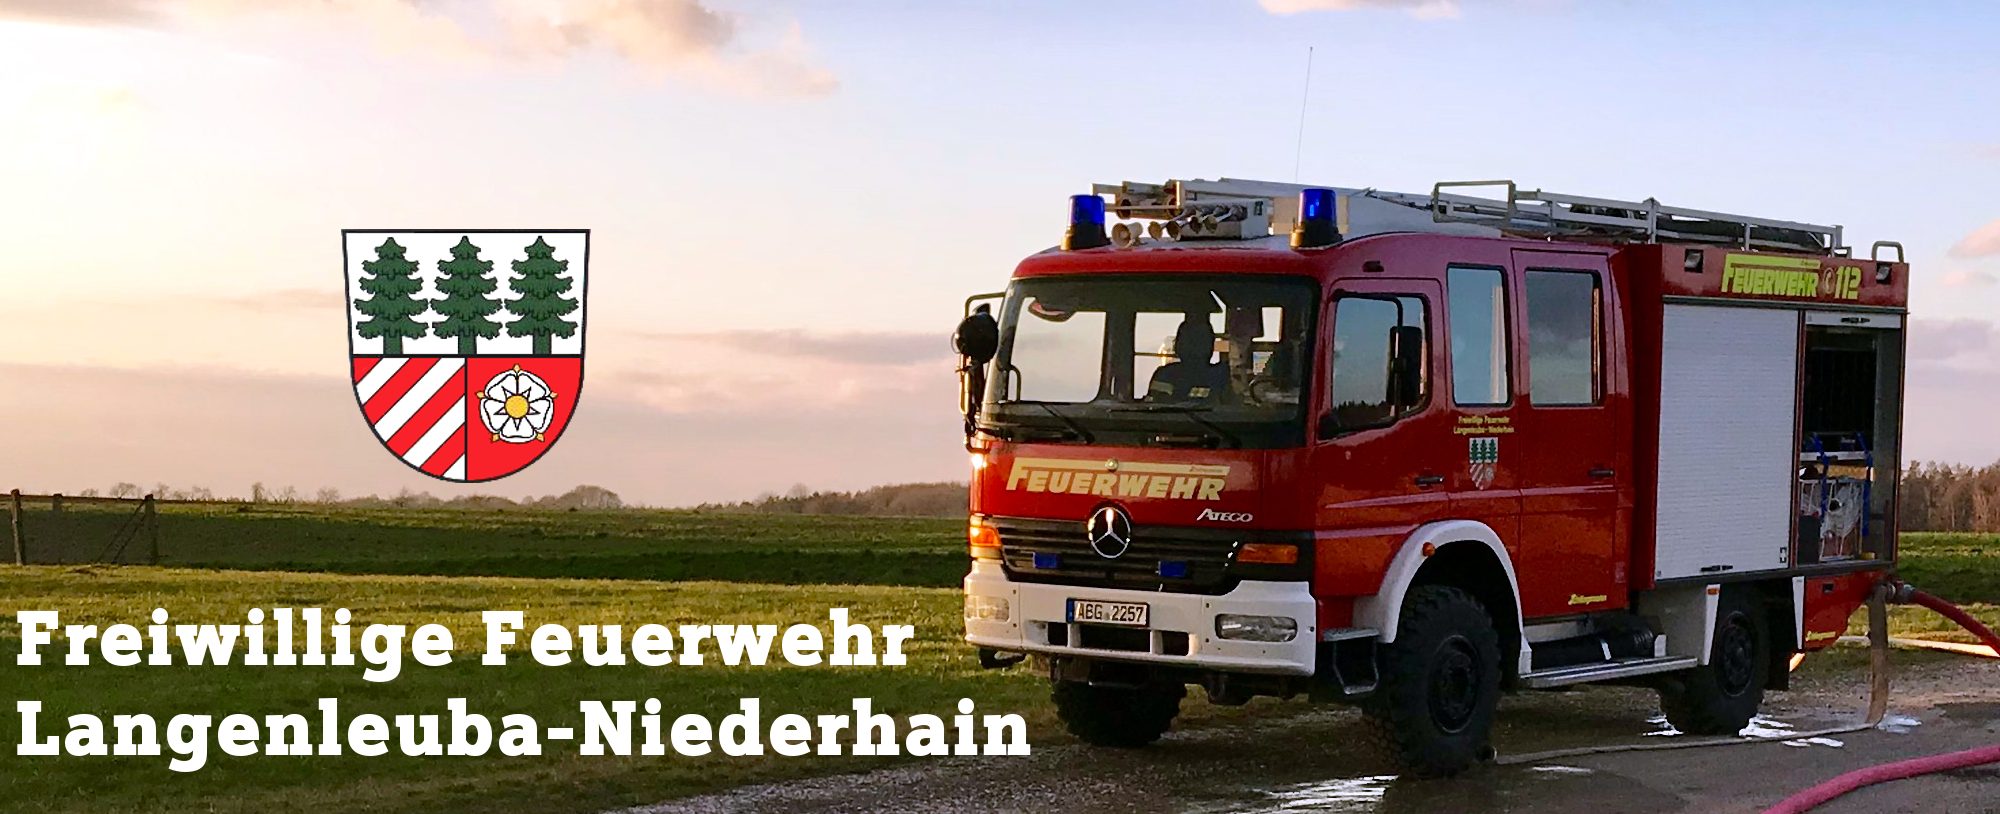 Freiwillige Feuerwehr Langenleuba-Niederhain